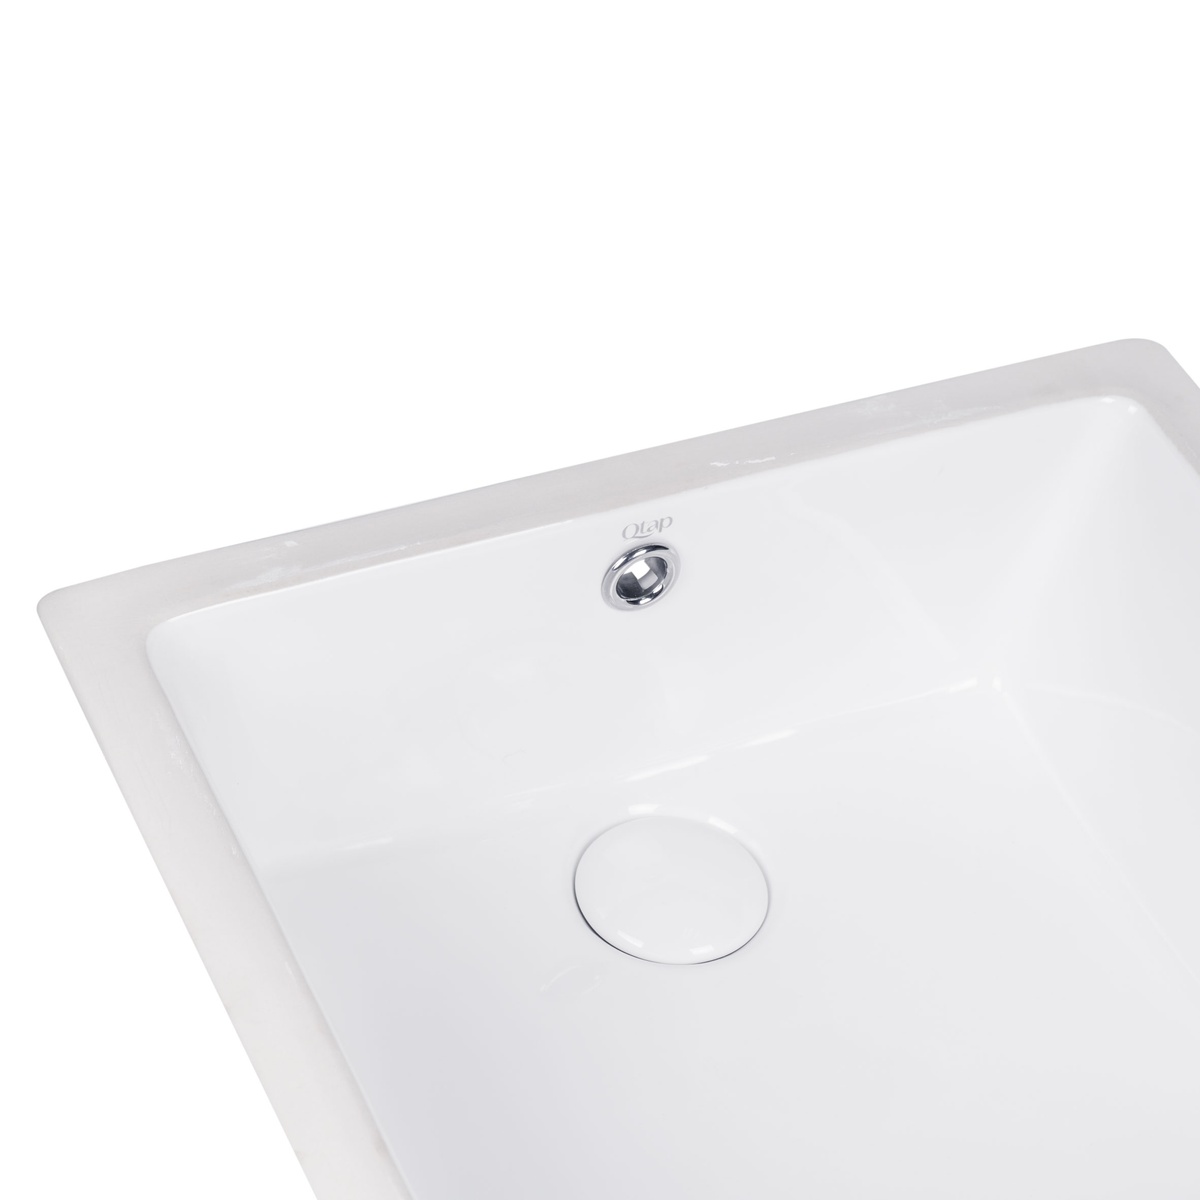 Раковина врізна у ванну під стільницю 440мм x 445мм Q-TAP Stork білий квадратна QT15116086W